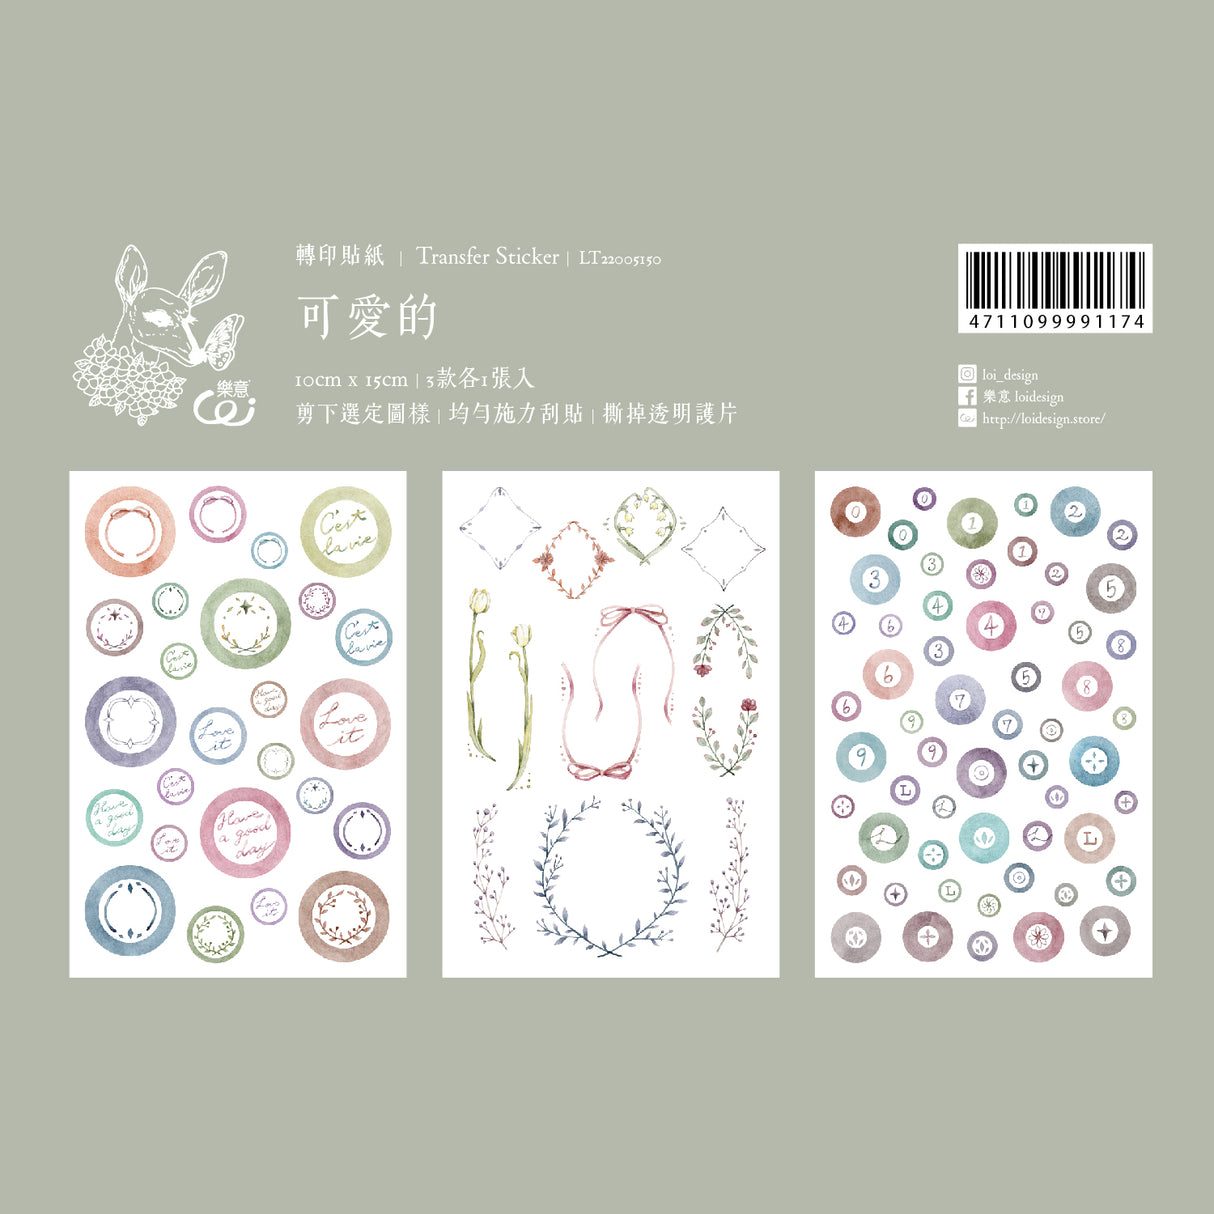 Loi Design Transfer Sticker "Lovely"